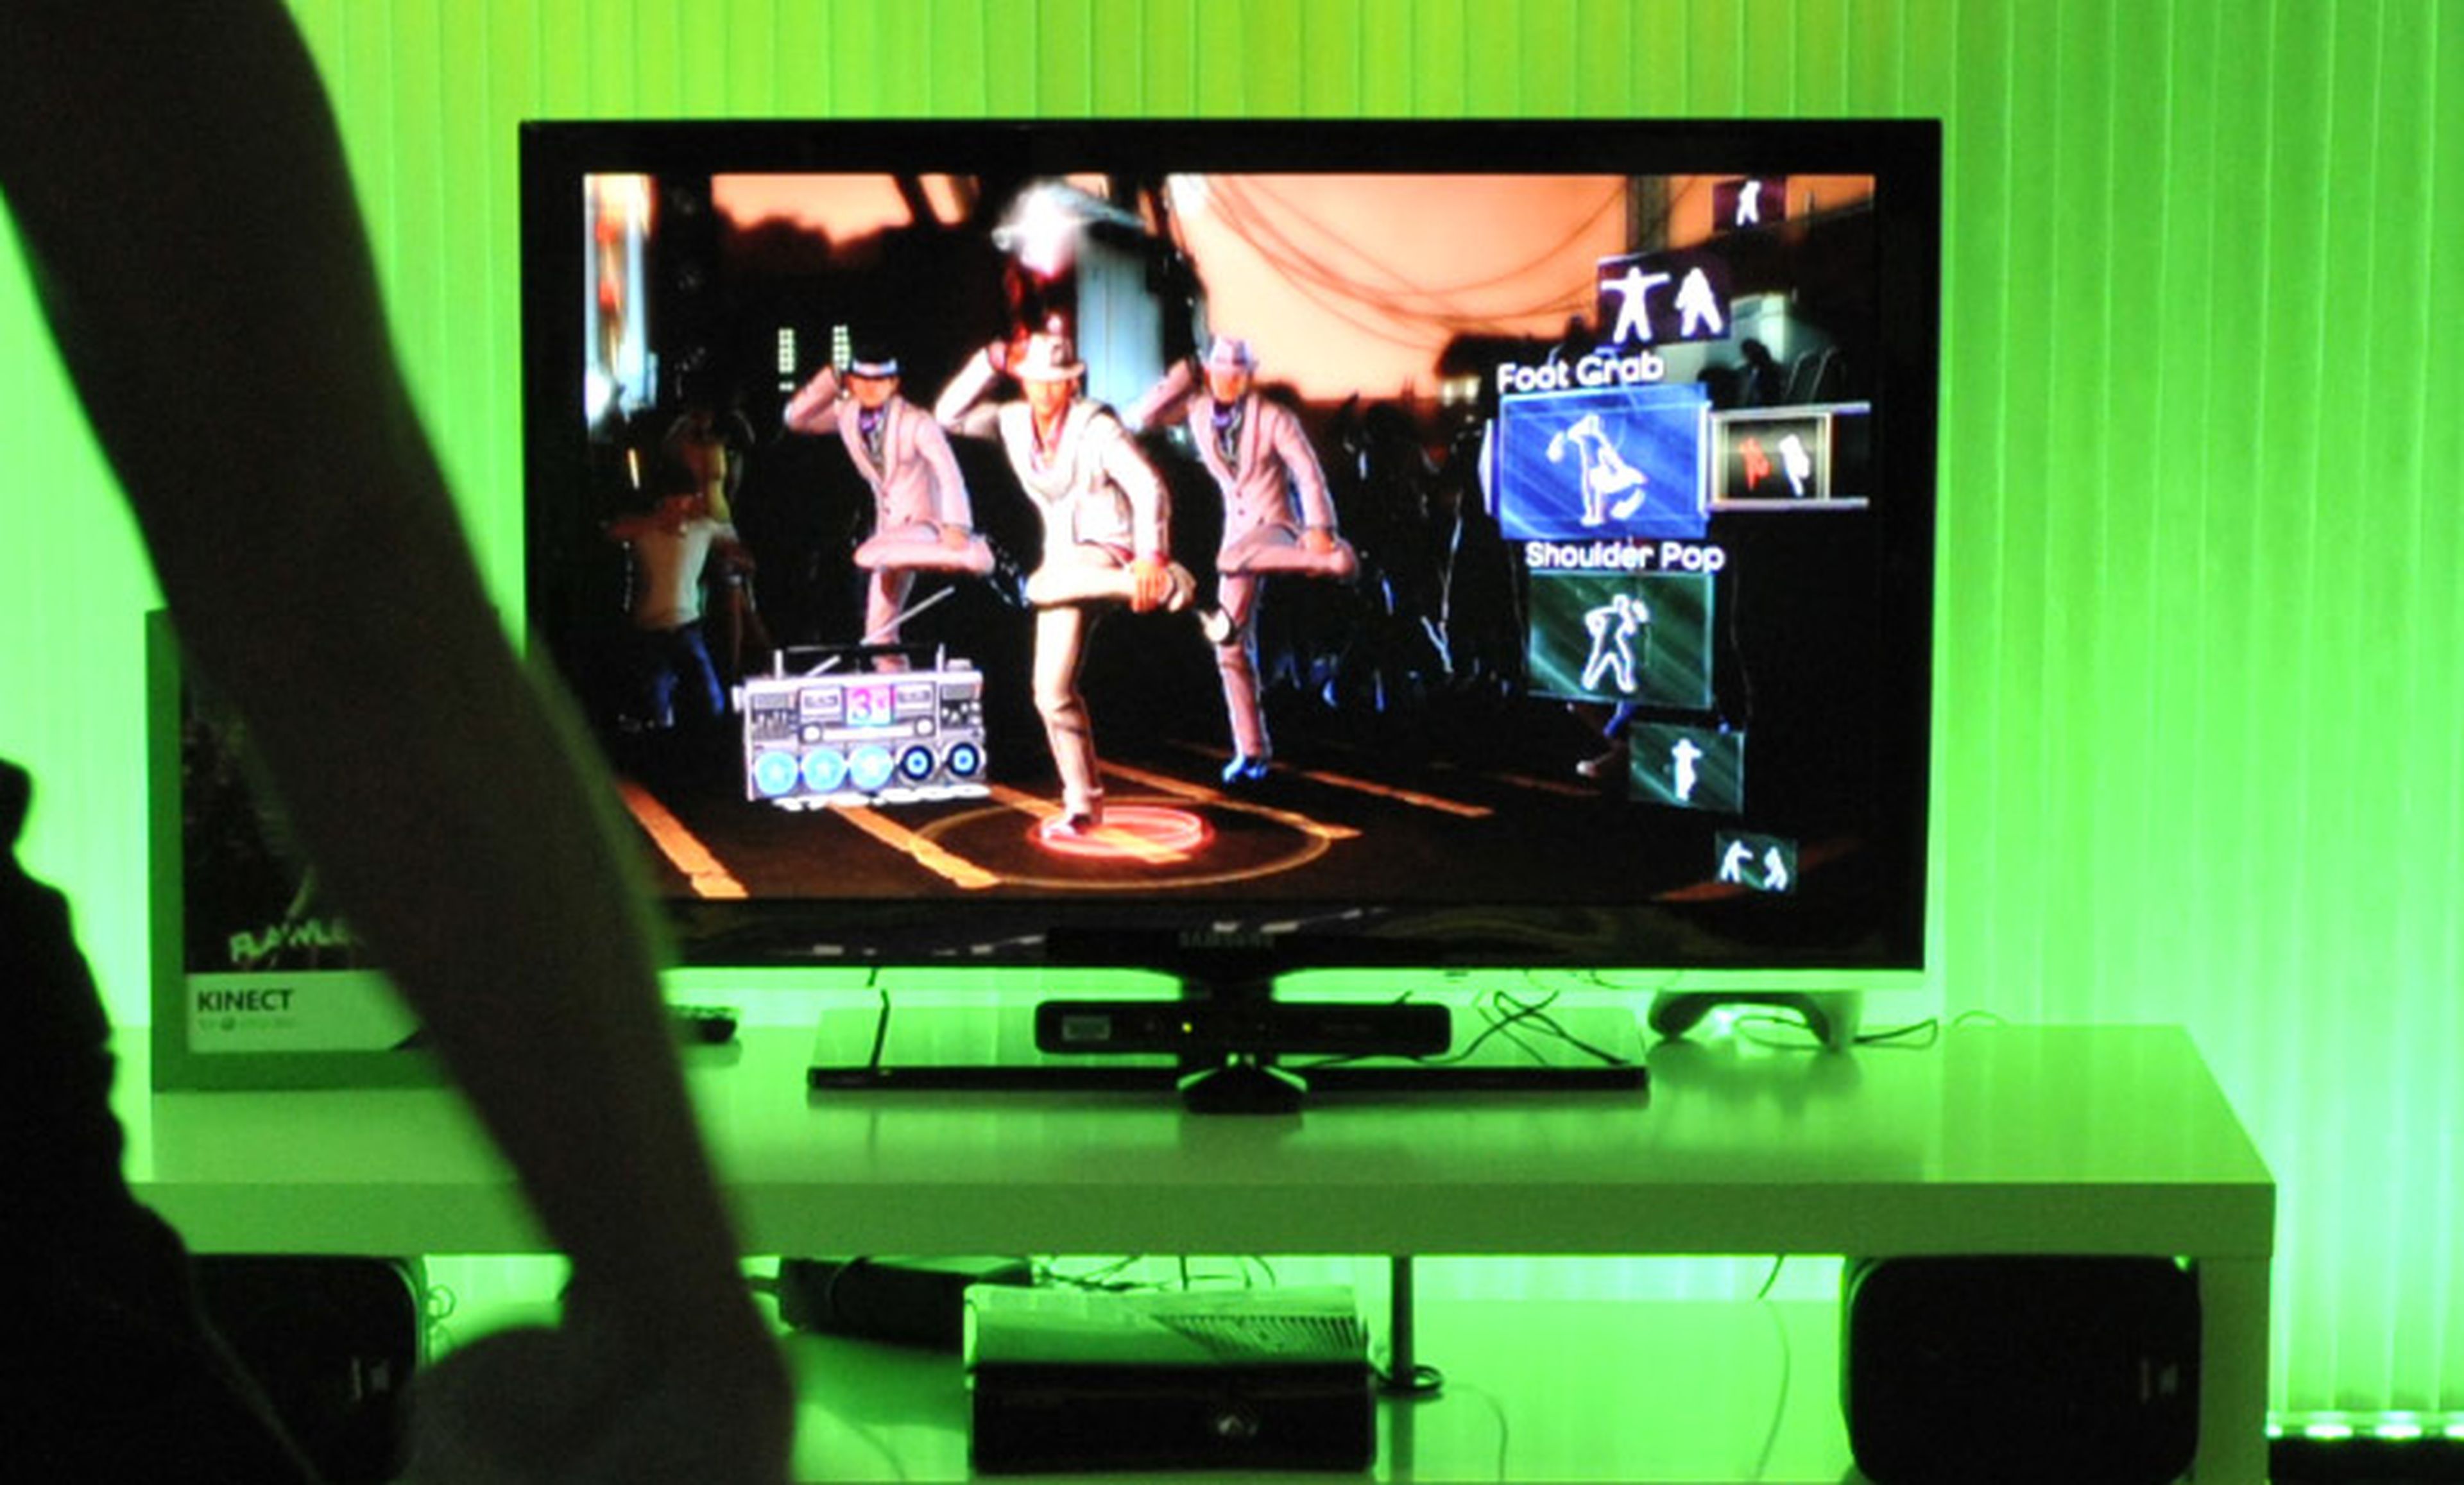 ¿Los rivales de Kinect no podrán copiarlo?